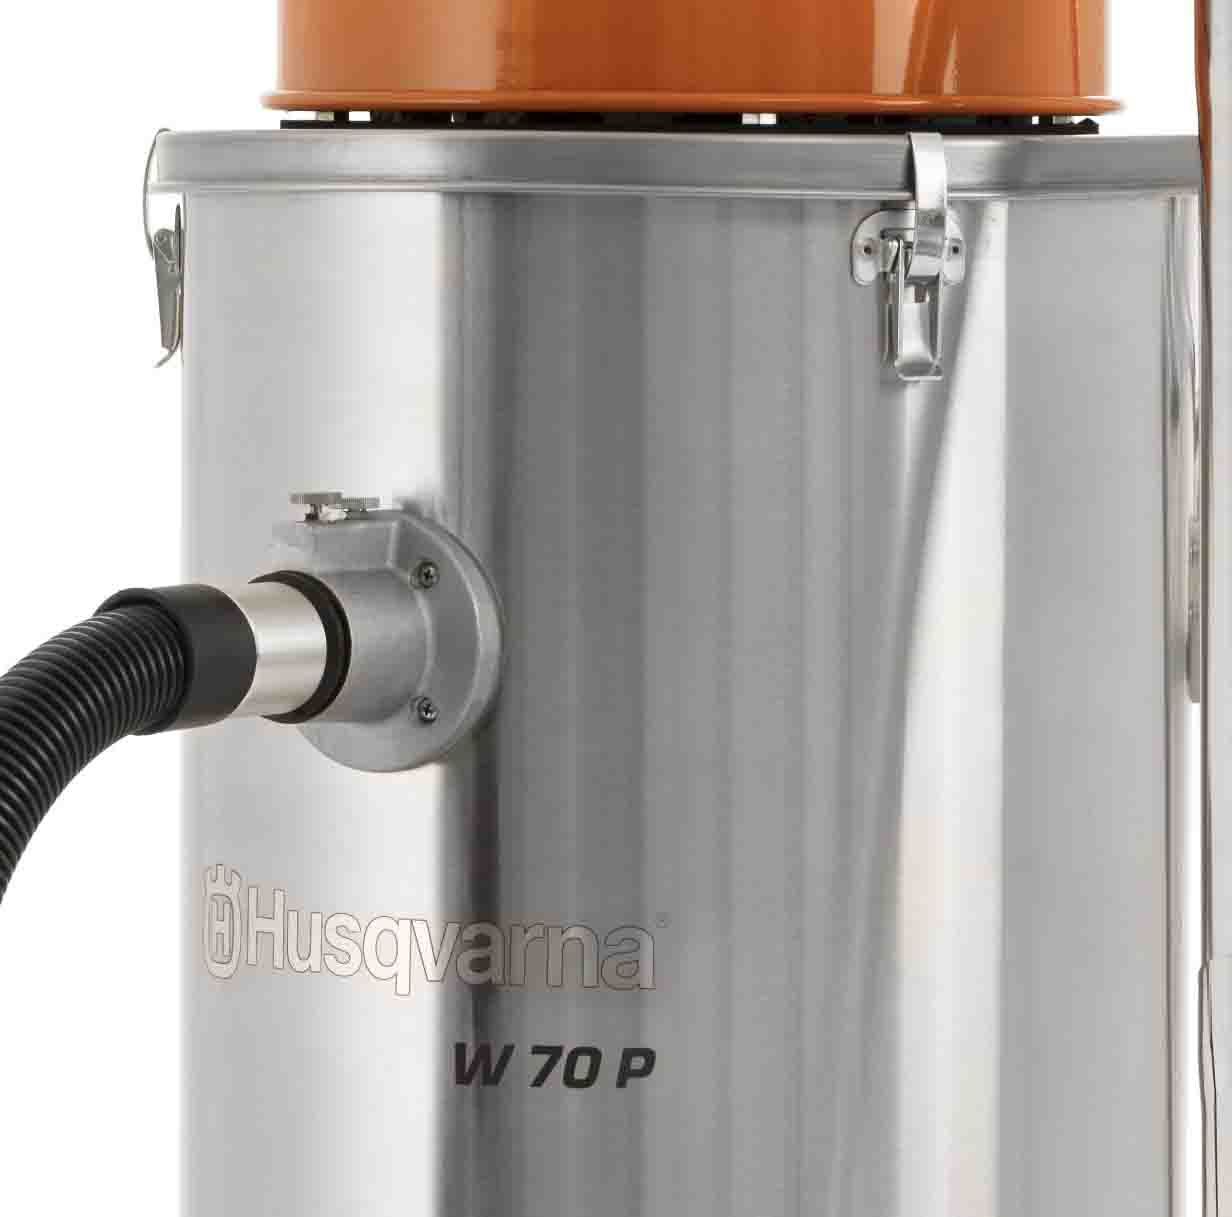 Husqvarna W70P Wet & Slurry Vacuum